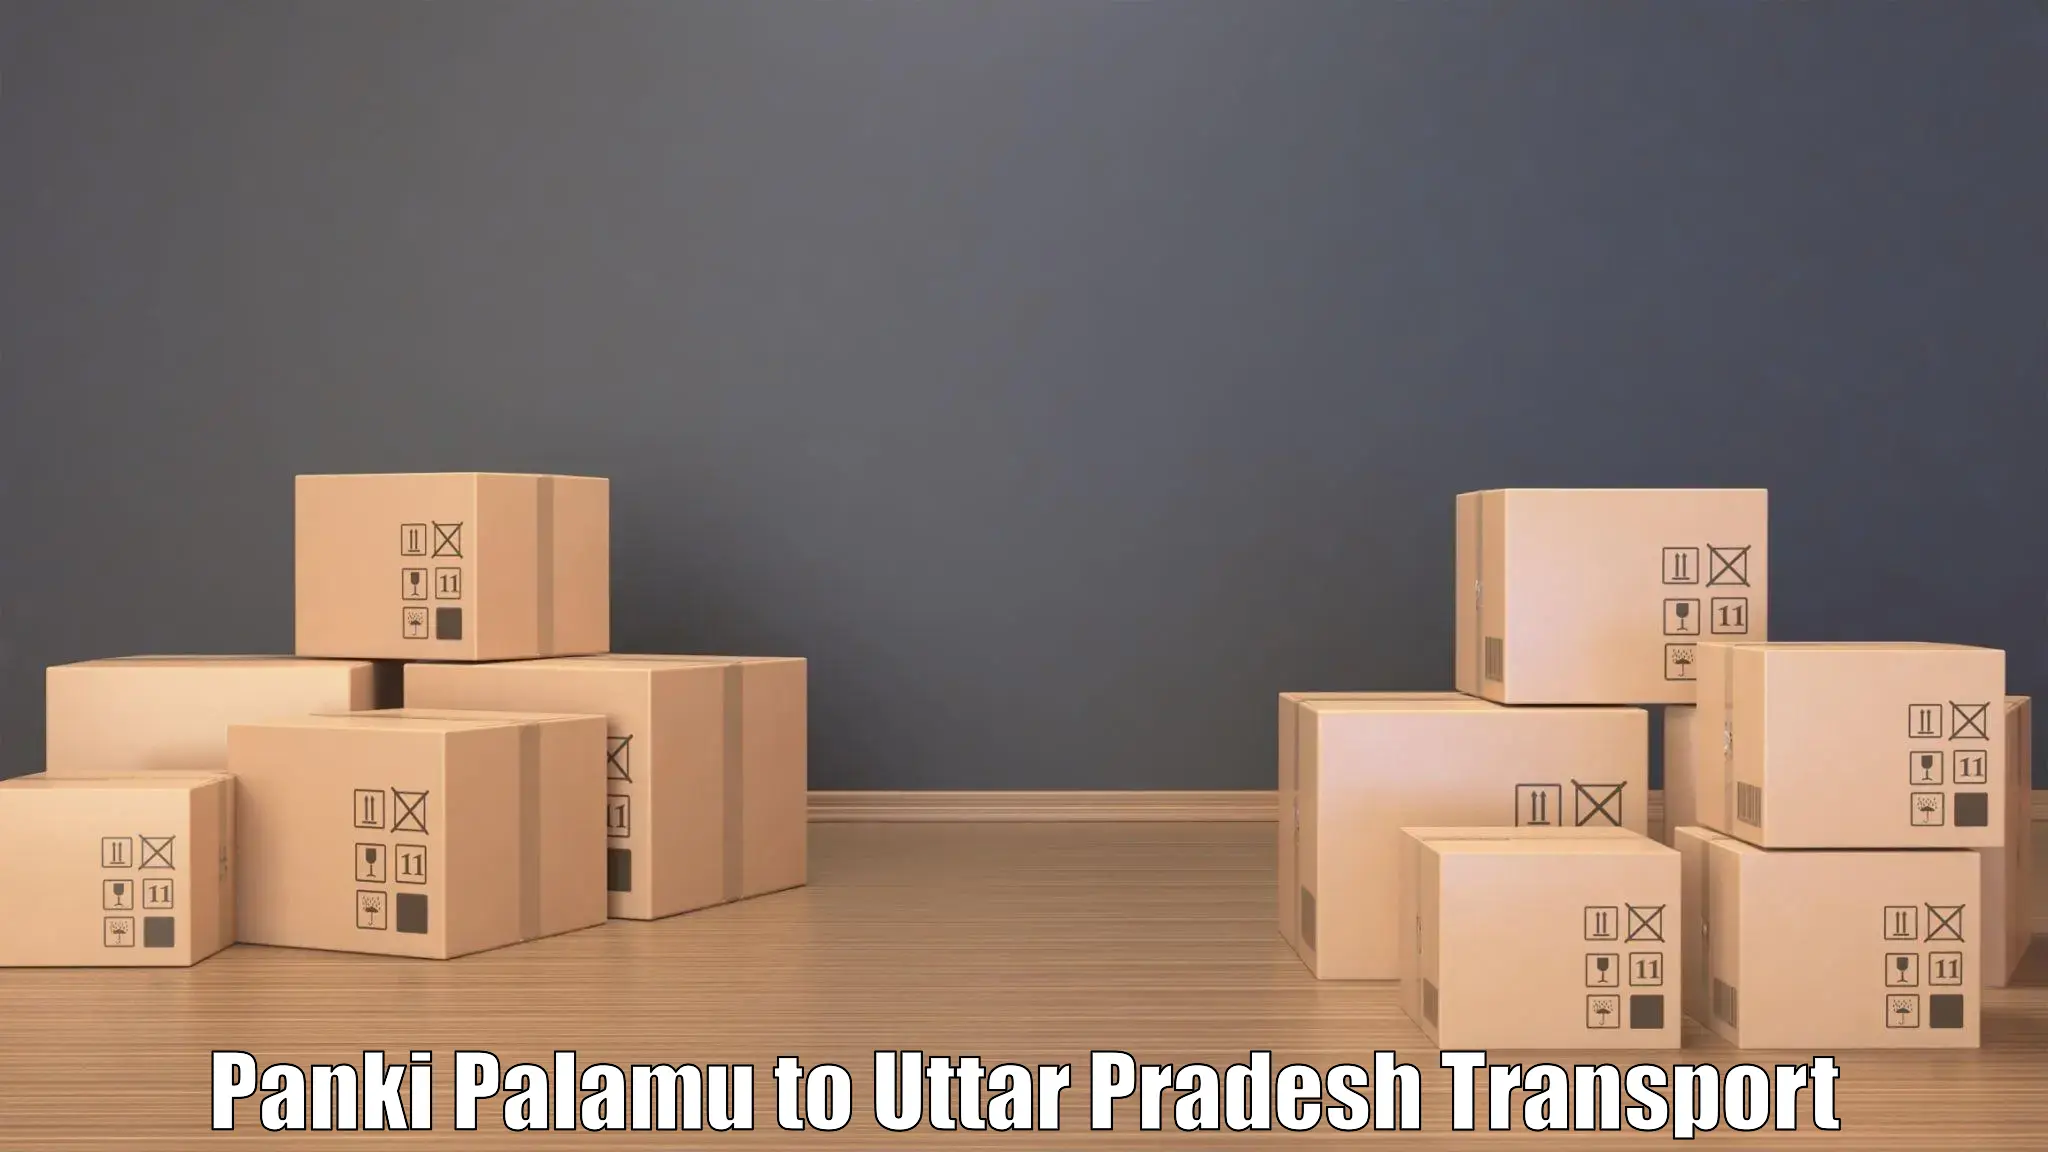 Transport in sharing Panki Palamu to Rajesultanpur